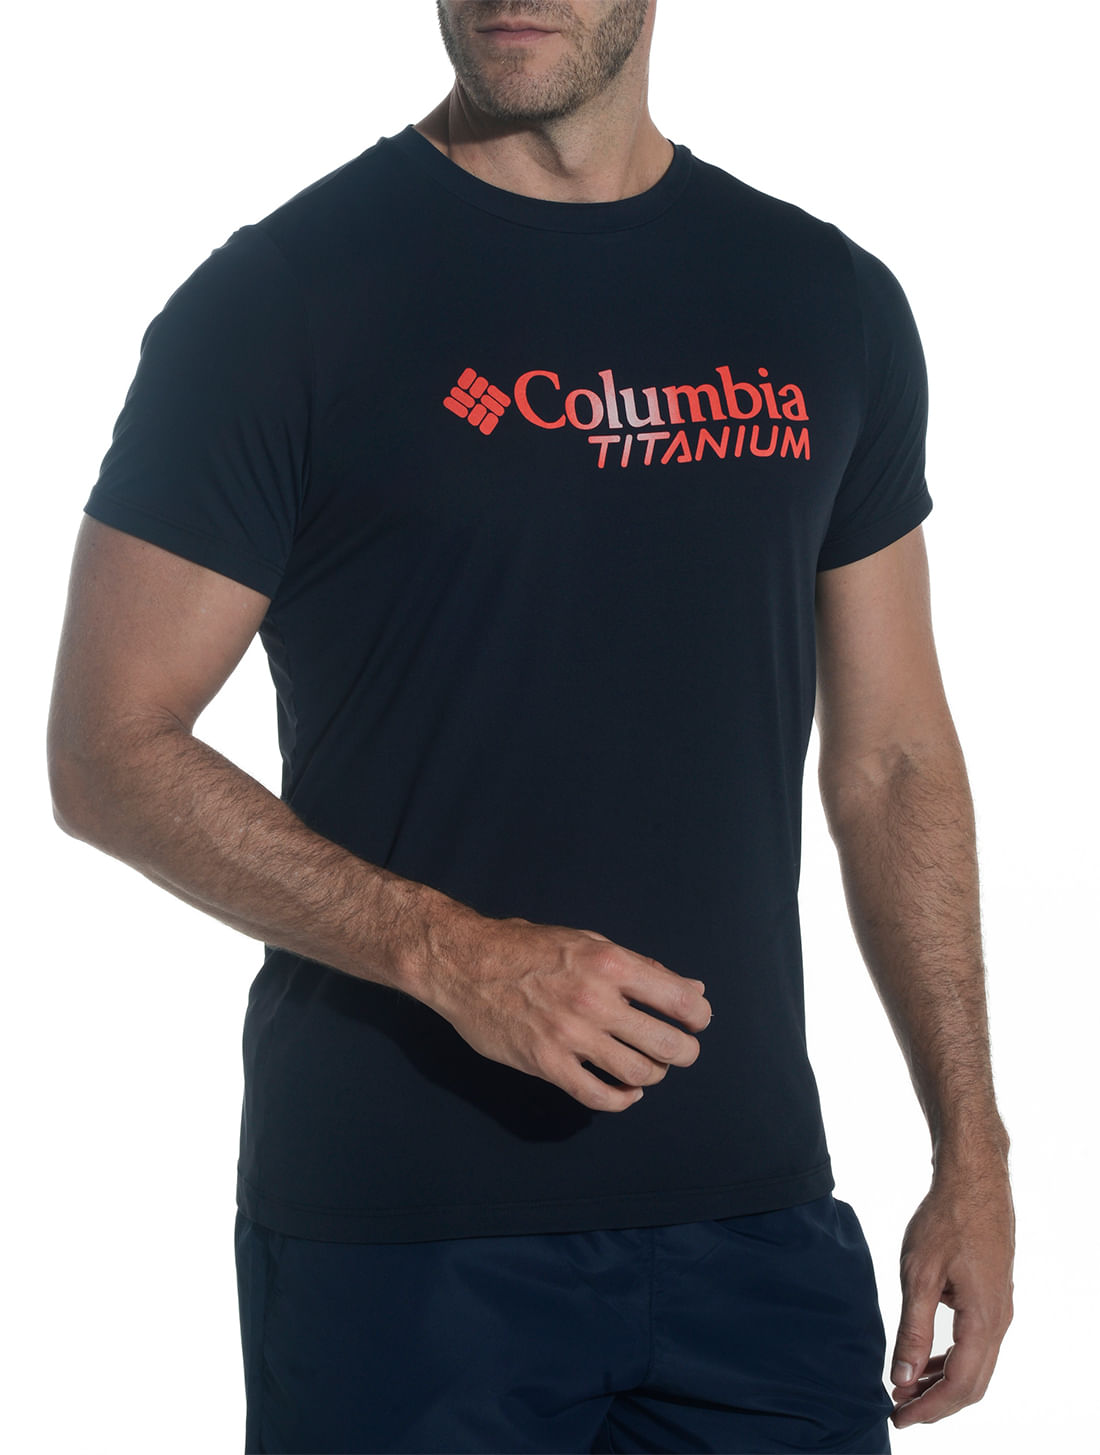 Camiseta Columbia Titanium Burst Masculina 320470-010 - Preto